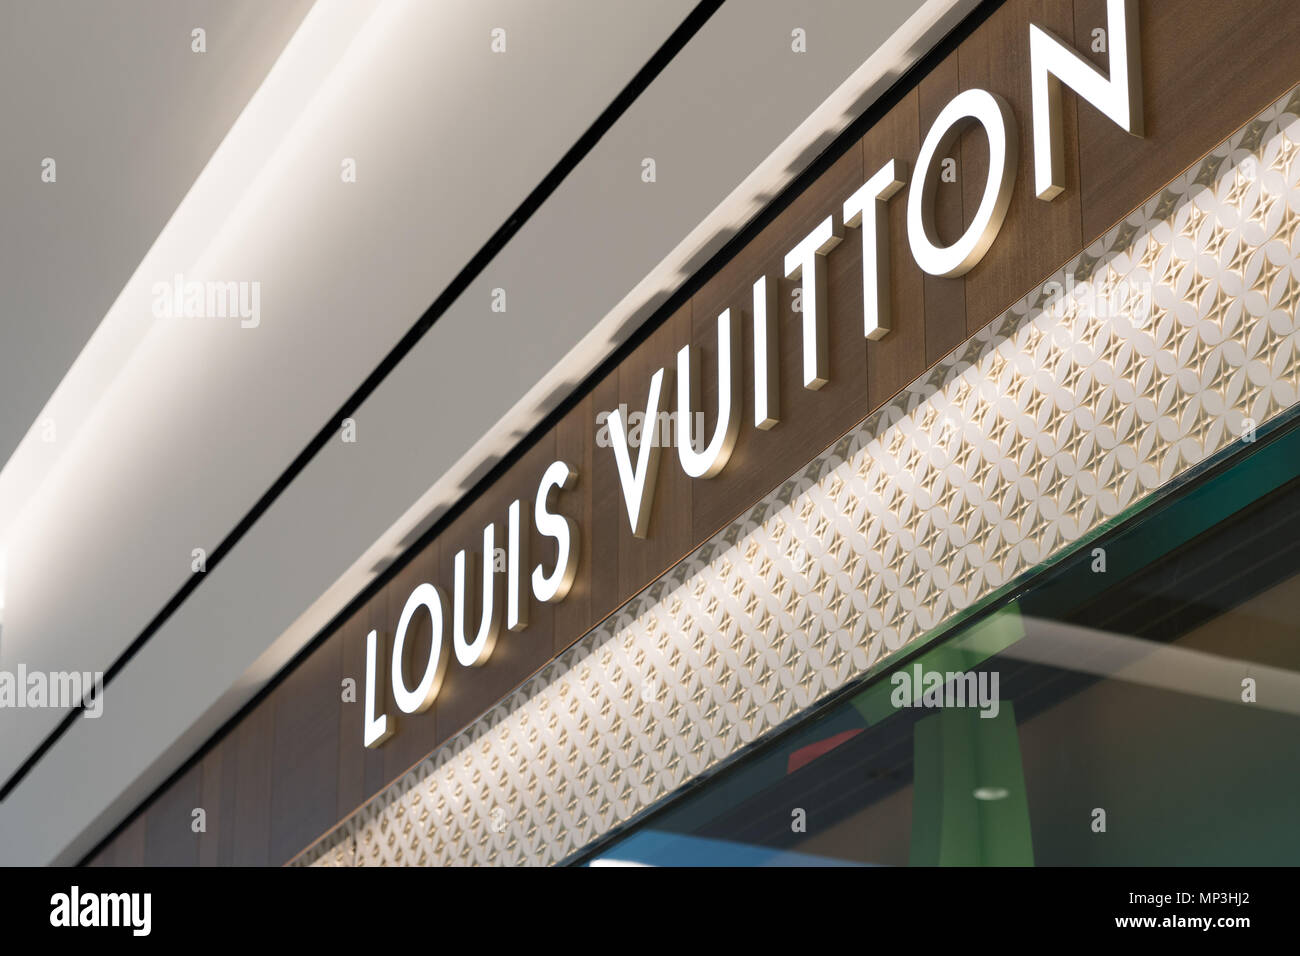 Louis Vuitton Sandton Contact Details